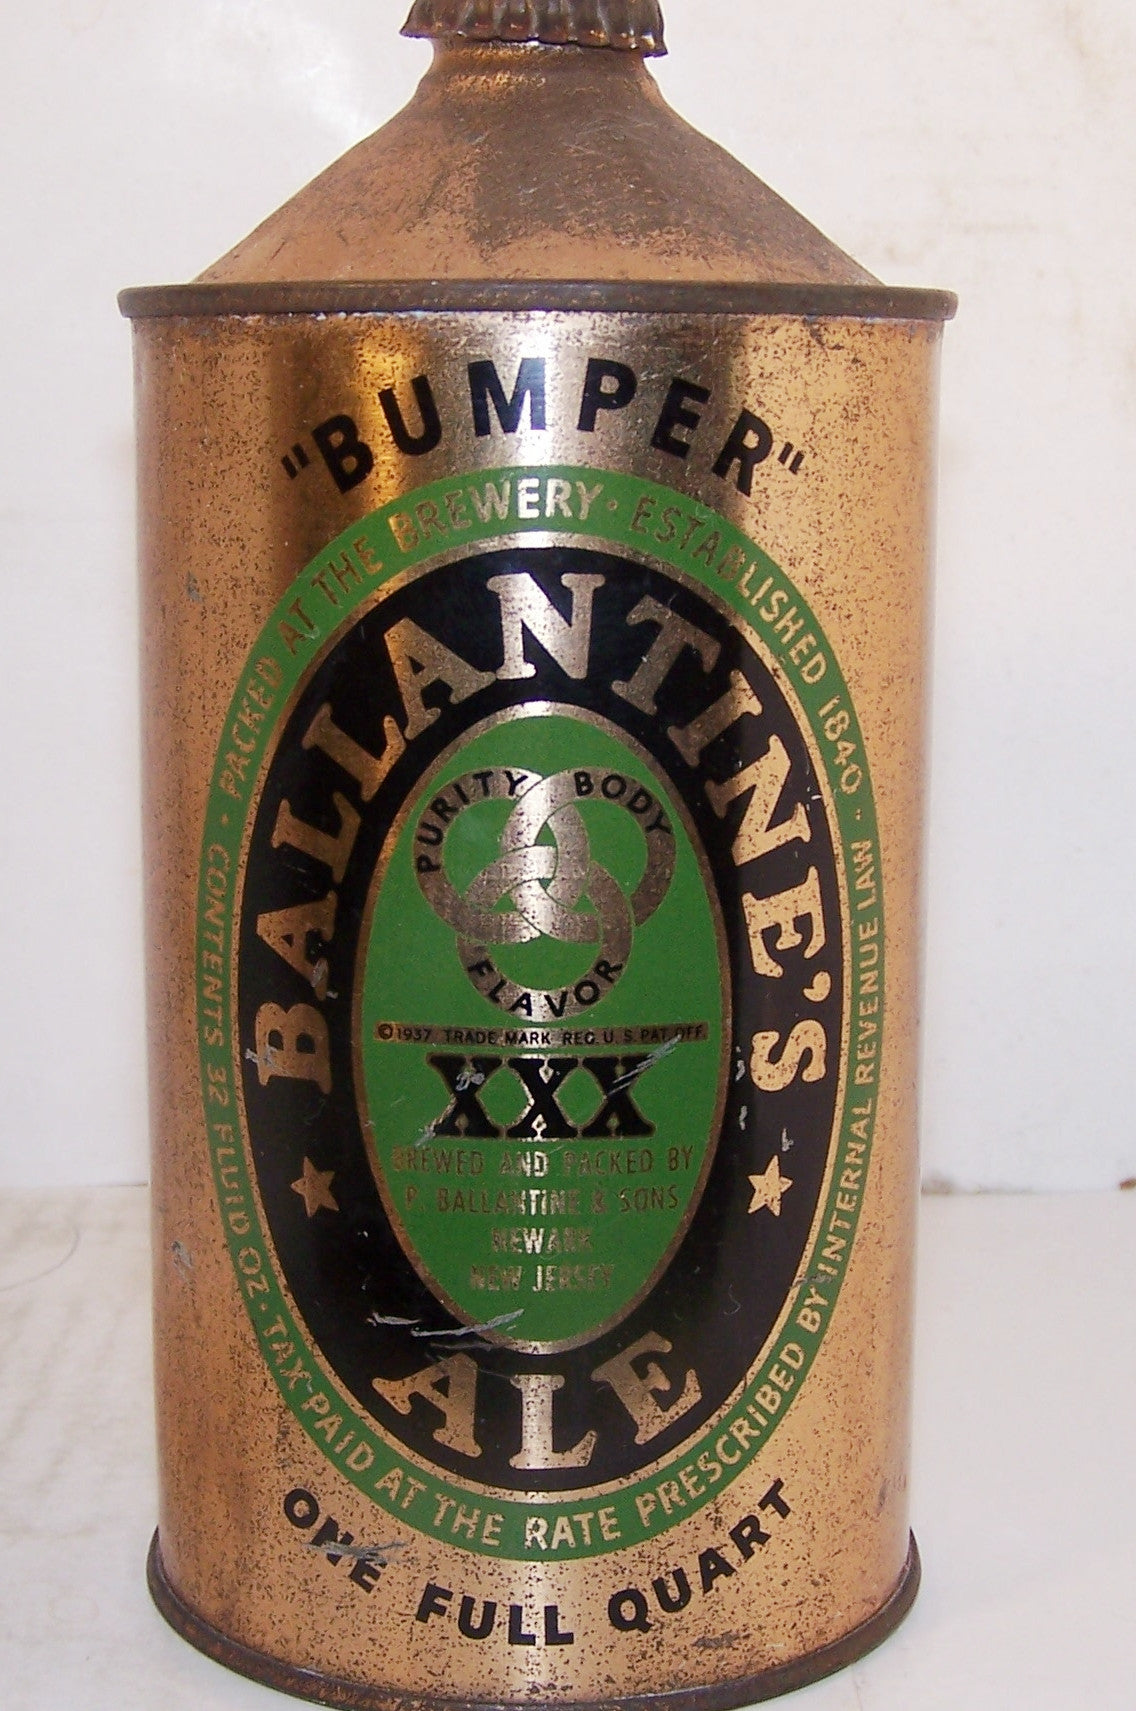 Ballantine Ale "Bumper" USBC 202-7, with crown, Grade 1-